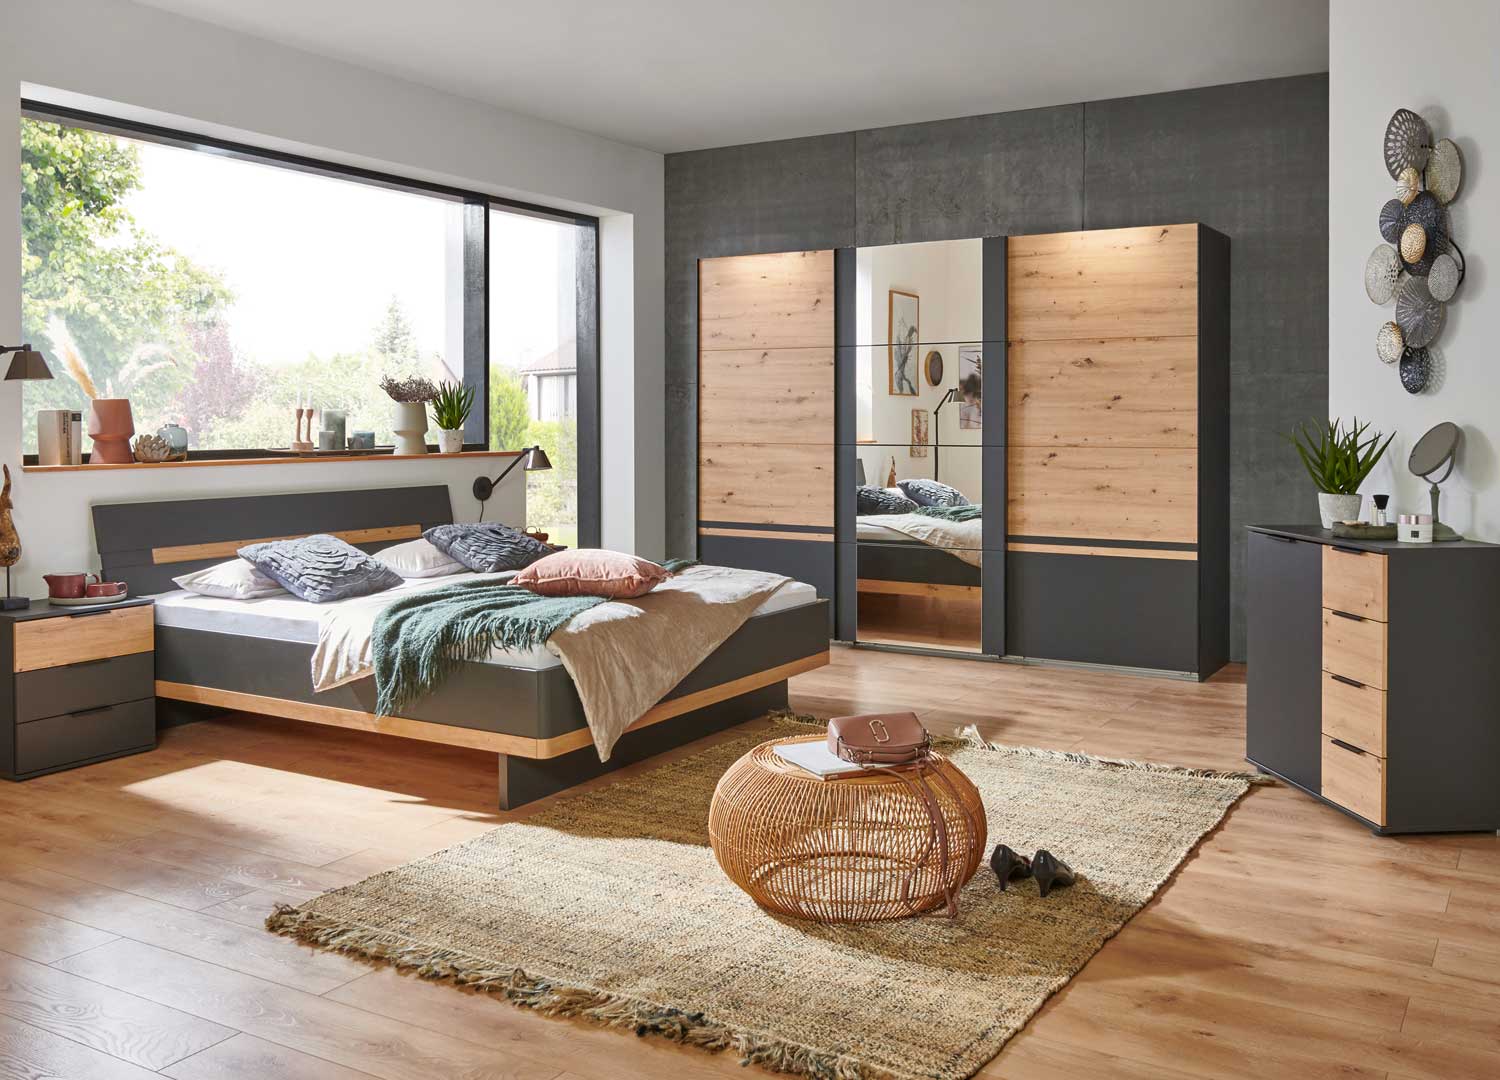 Chambre à coucher complète adulte (lit 140x200 cm + 2 chevets + armoire +  commode) coloris chêne